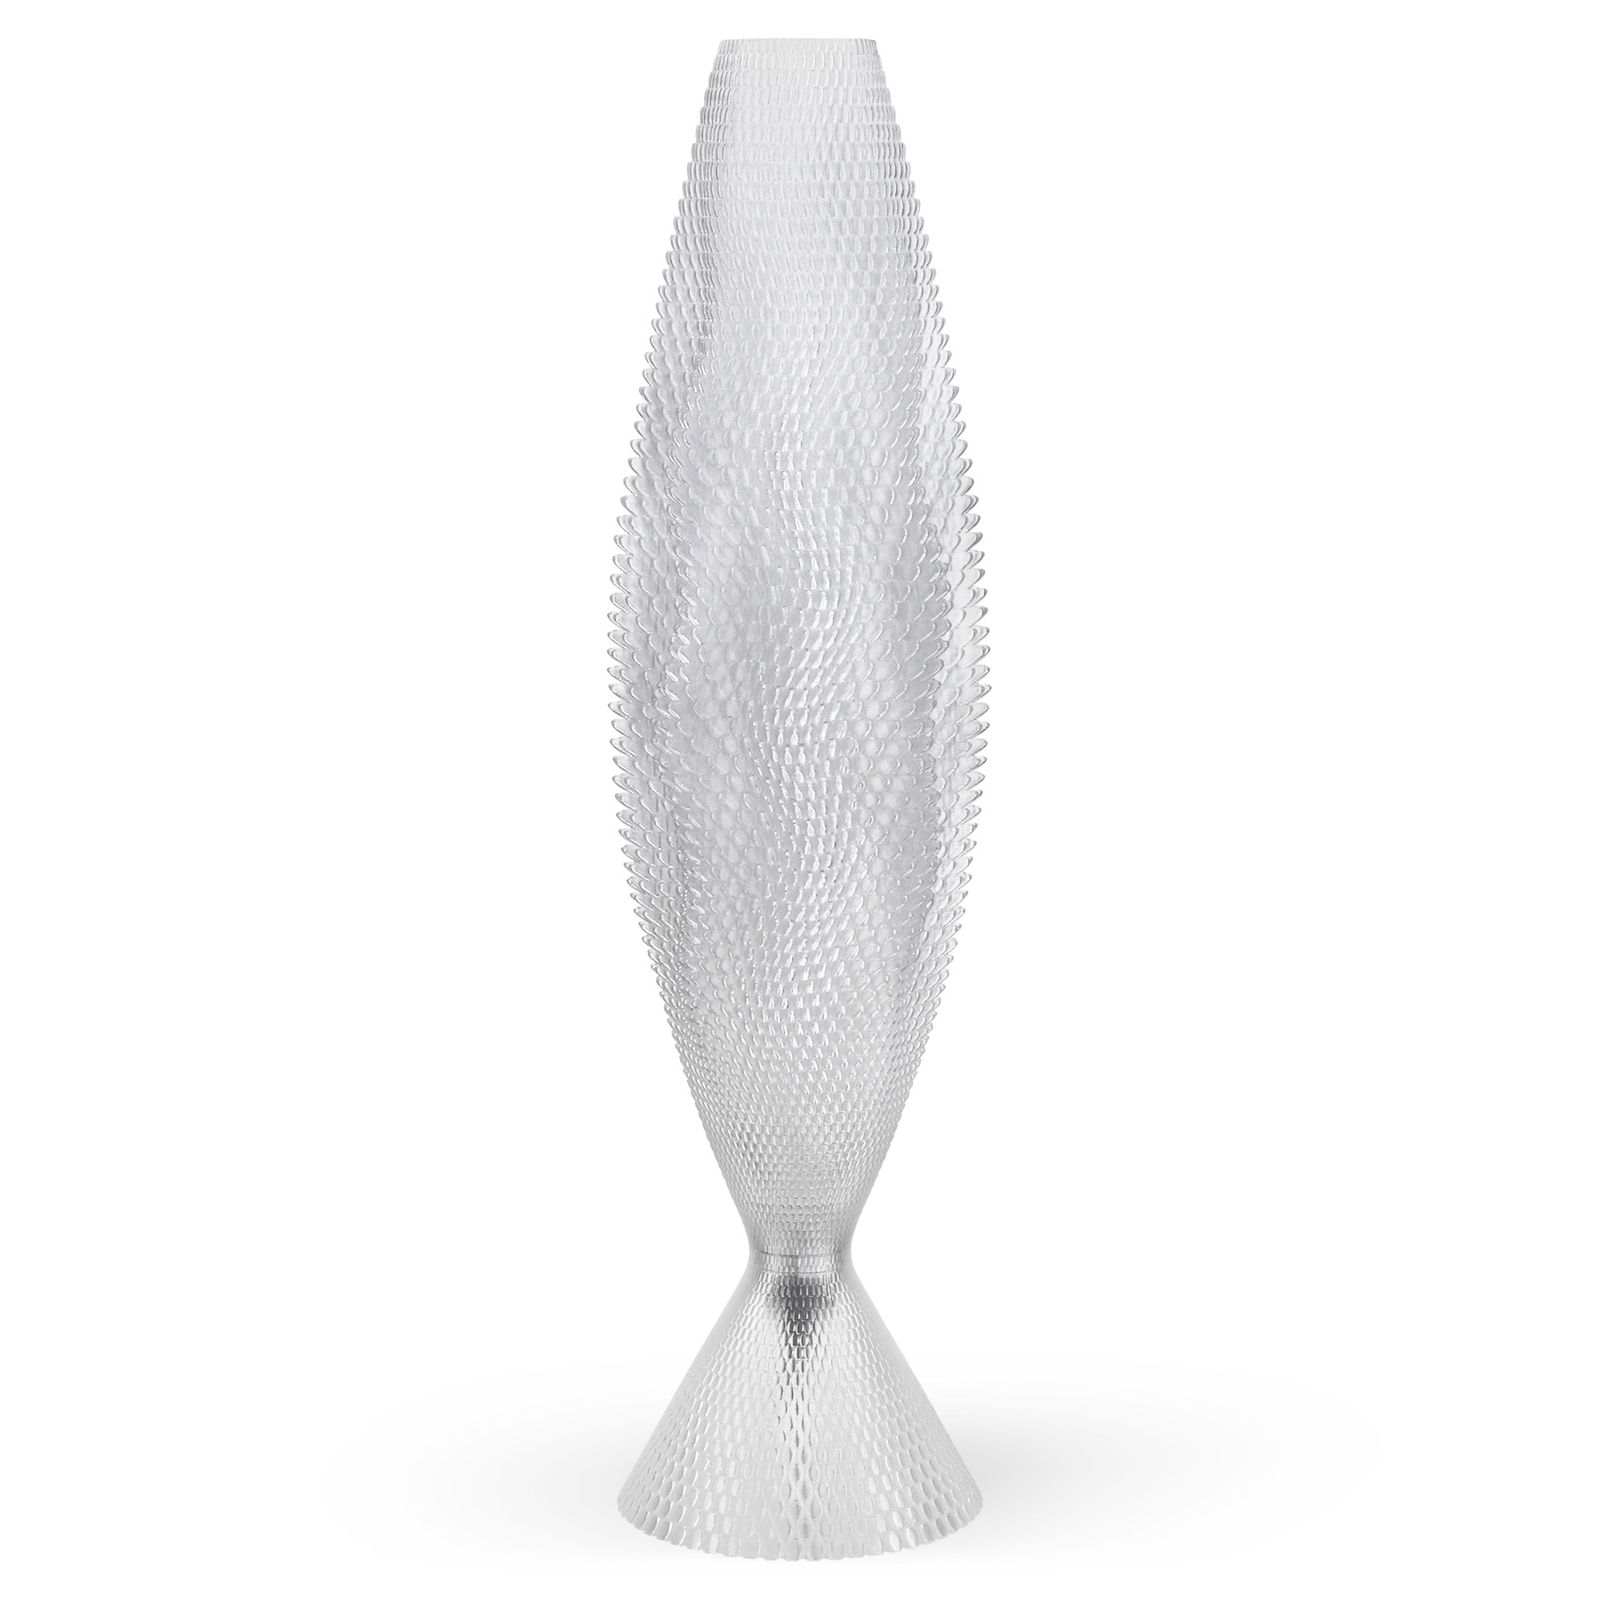 Lampada da tavolo Koral in biomateriale, cristallino 65 cm